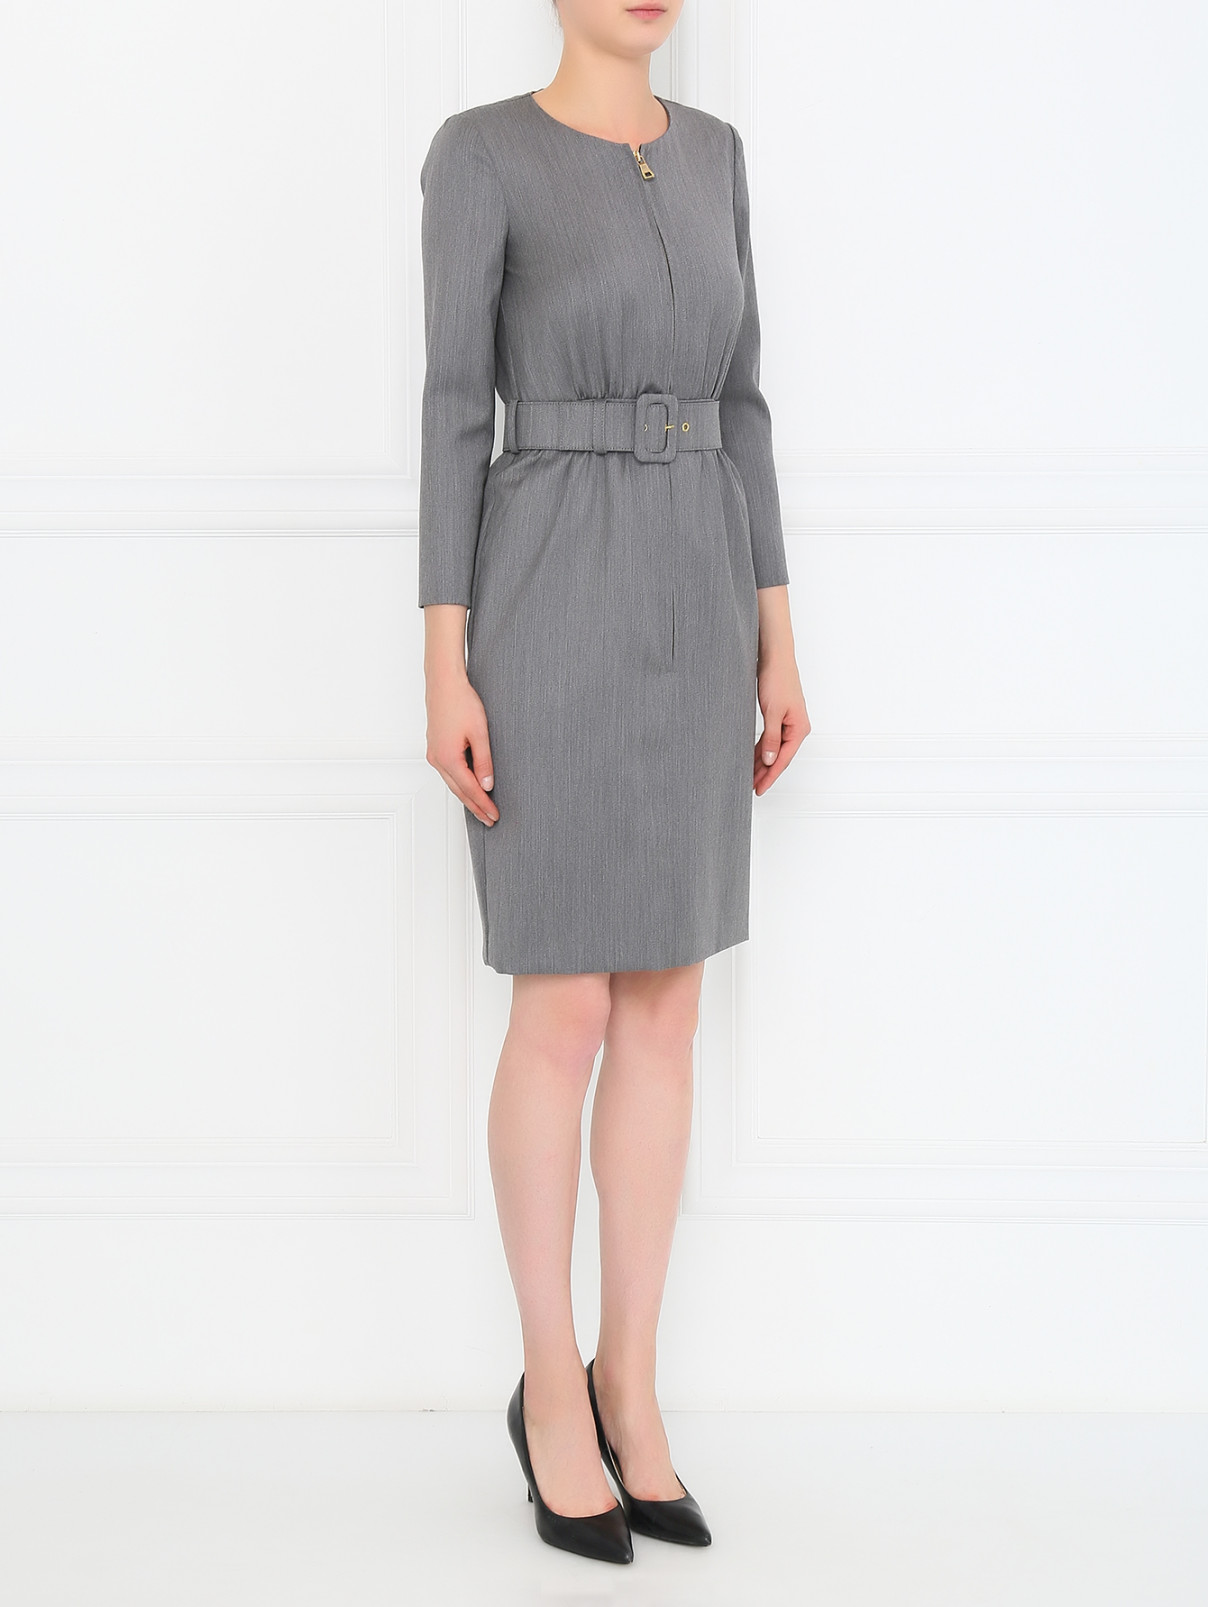 Платье из шерсти на молнии Moschino Boutique  –  Модель Общий вид  – Цвет:  Серый